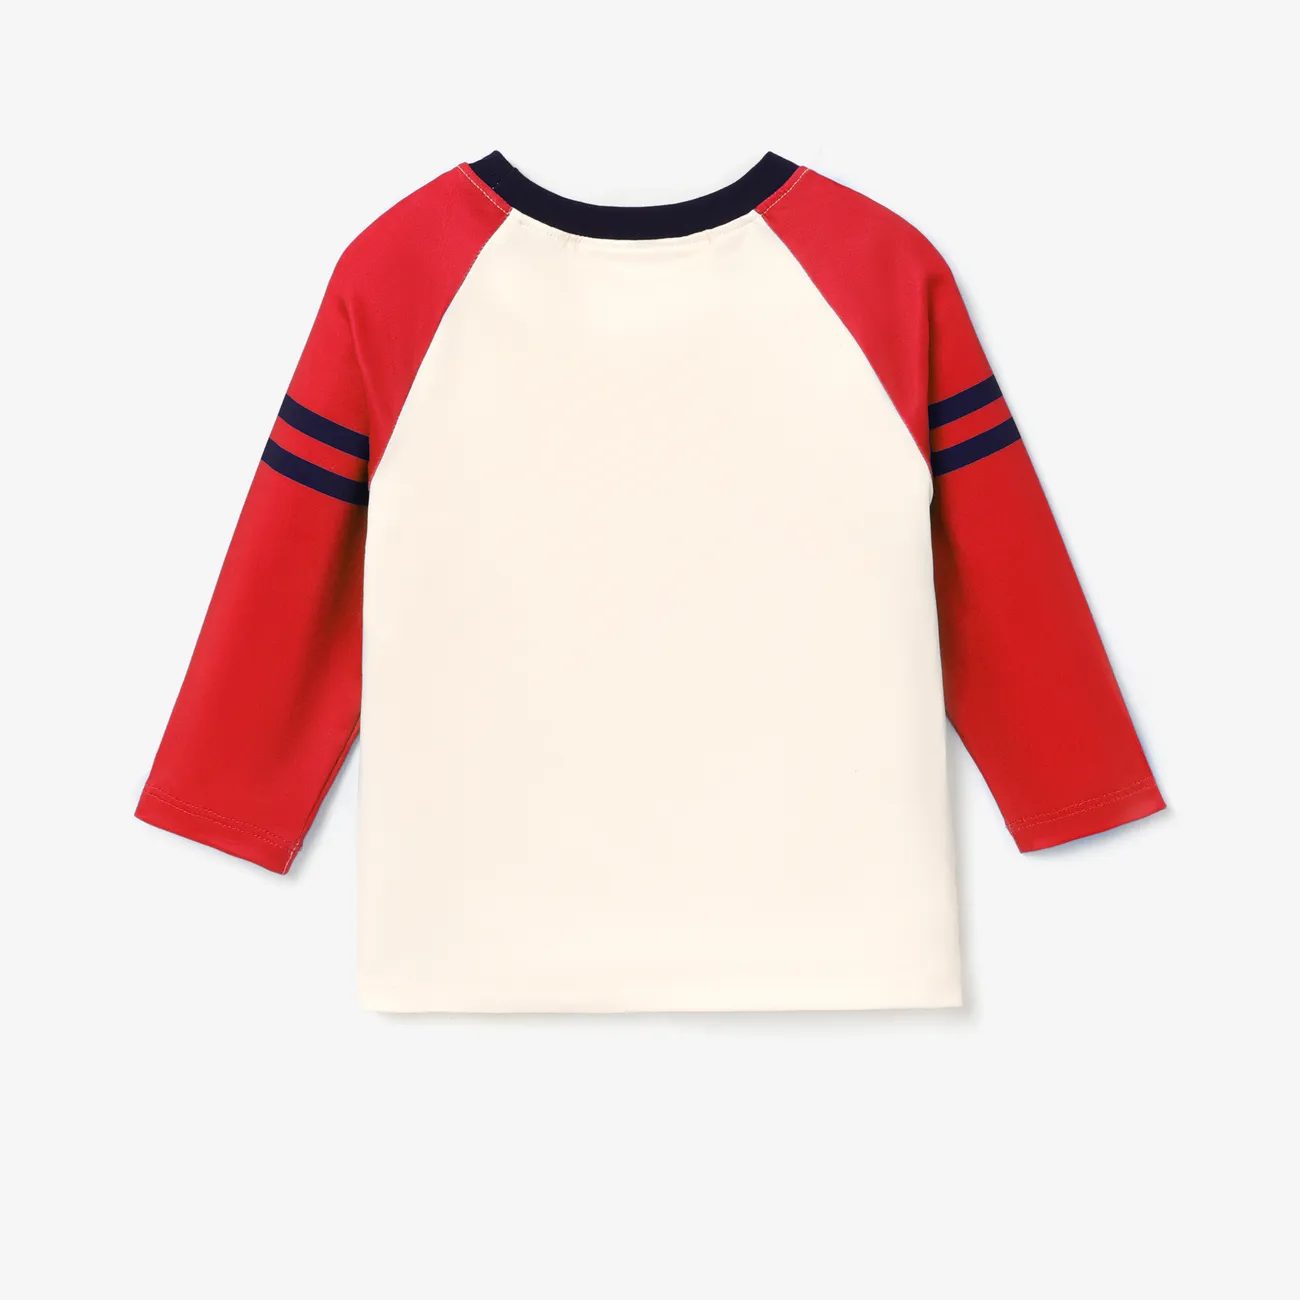 Harry Potter Enfant en bas âge Unisexe Couture de tissus Enfantin Manches longues T-Shirt Rouge big image 1